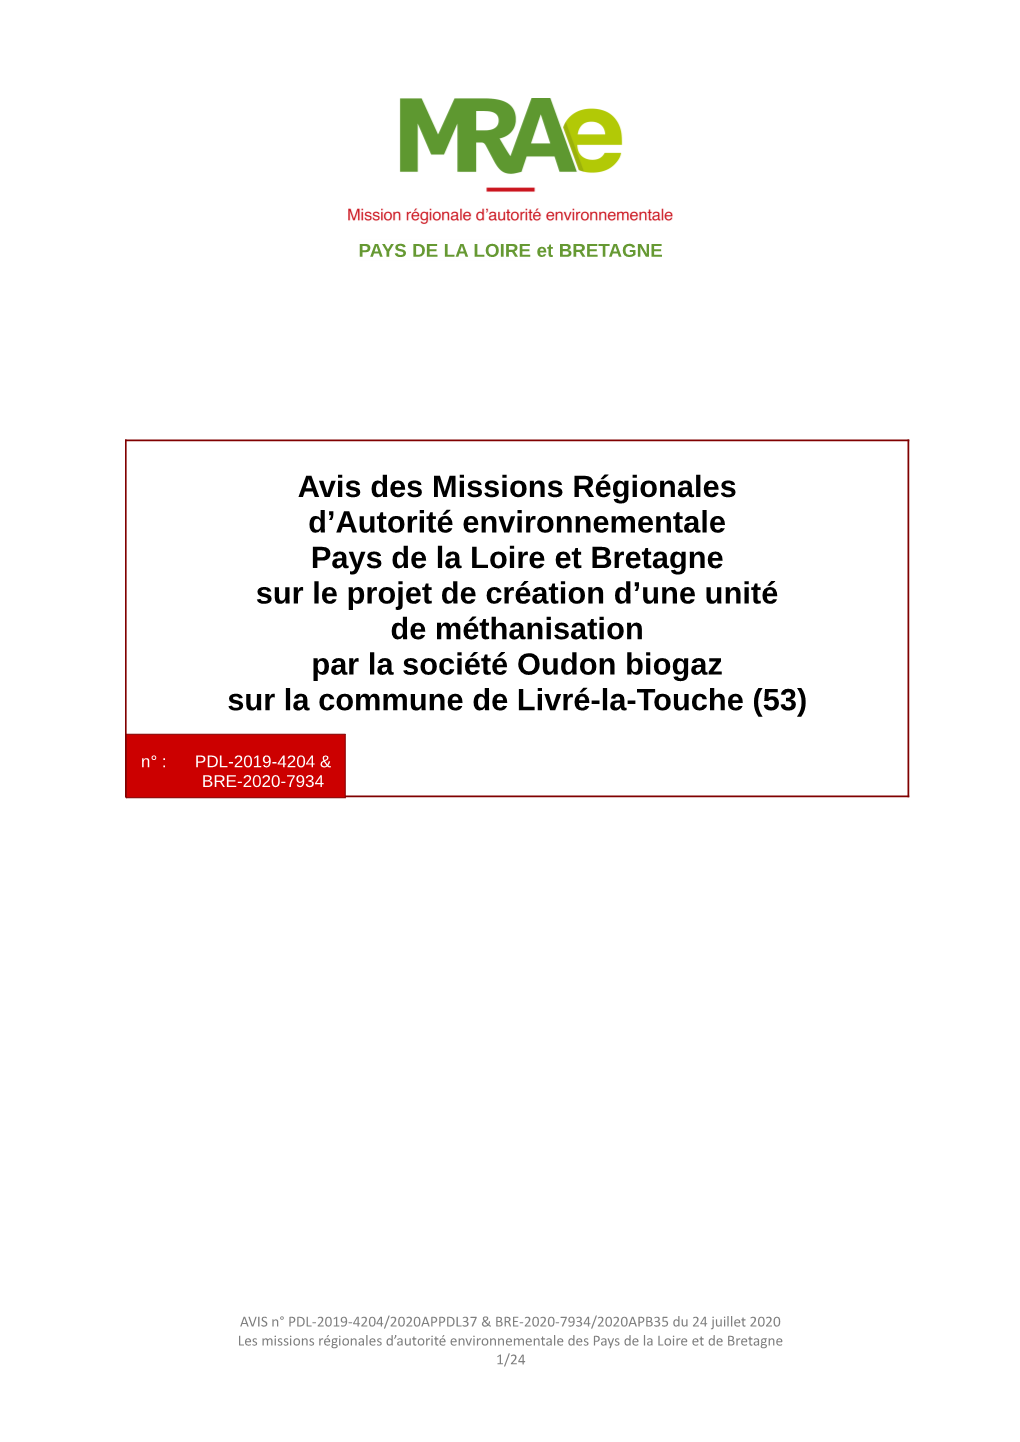 2020APPDL37 & BRE-2020-7934/2020APB35 Du 24 Juillet 2020 Les Missions Régionales D’Autorité Environnementale Des Pays De La Loire Et De Bretagne 1/24 Avis